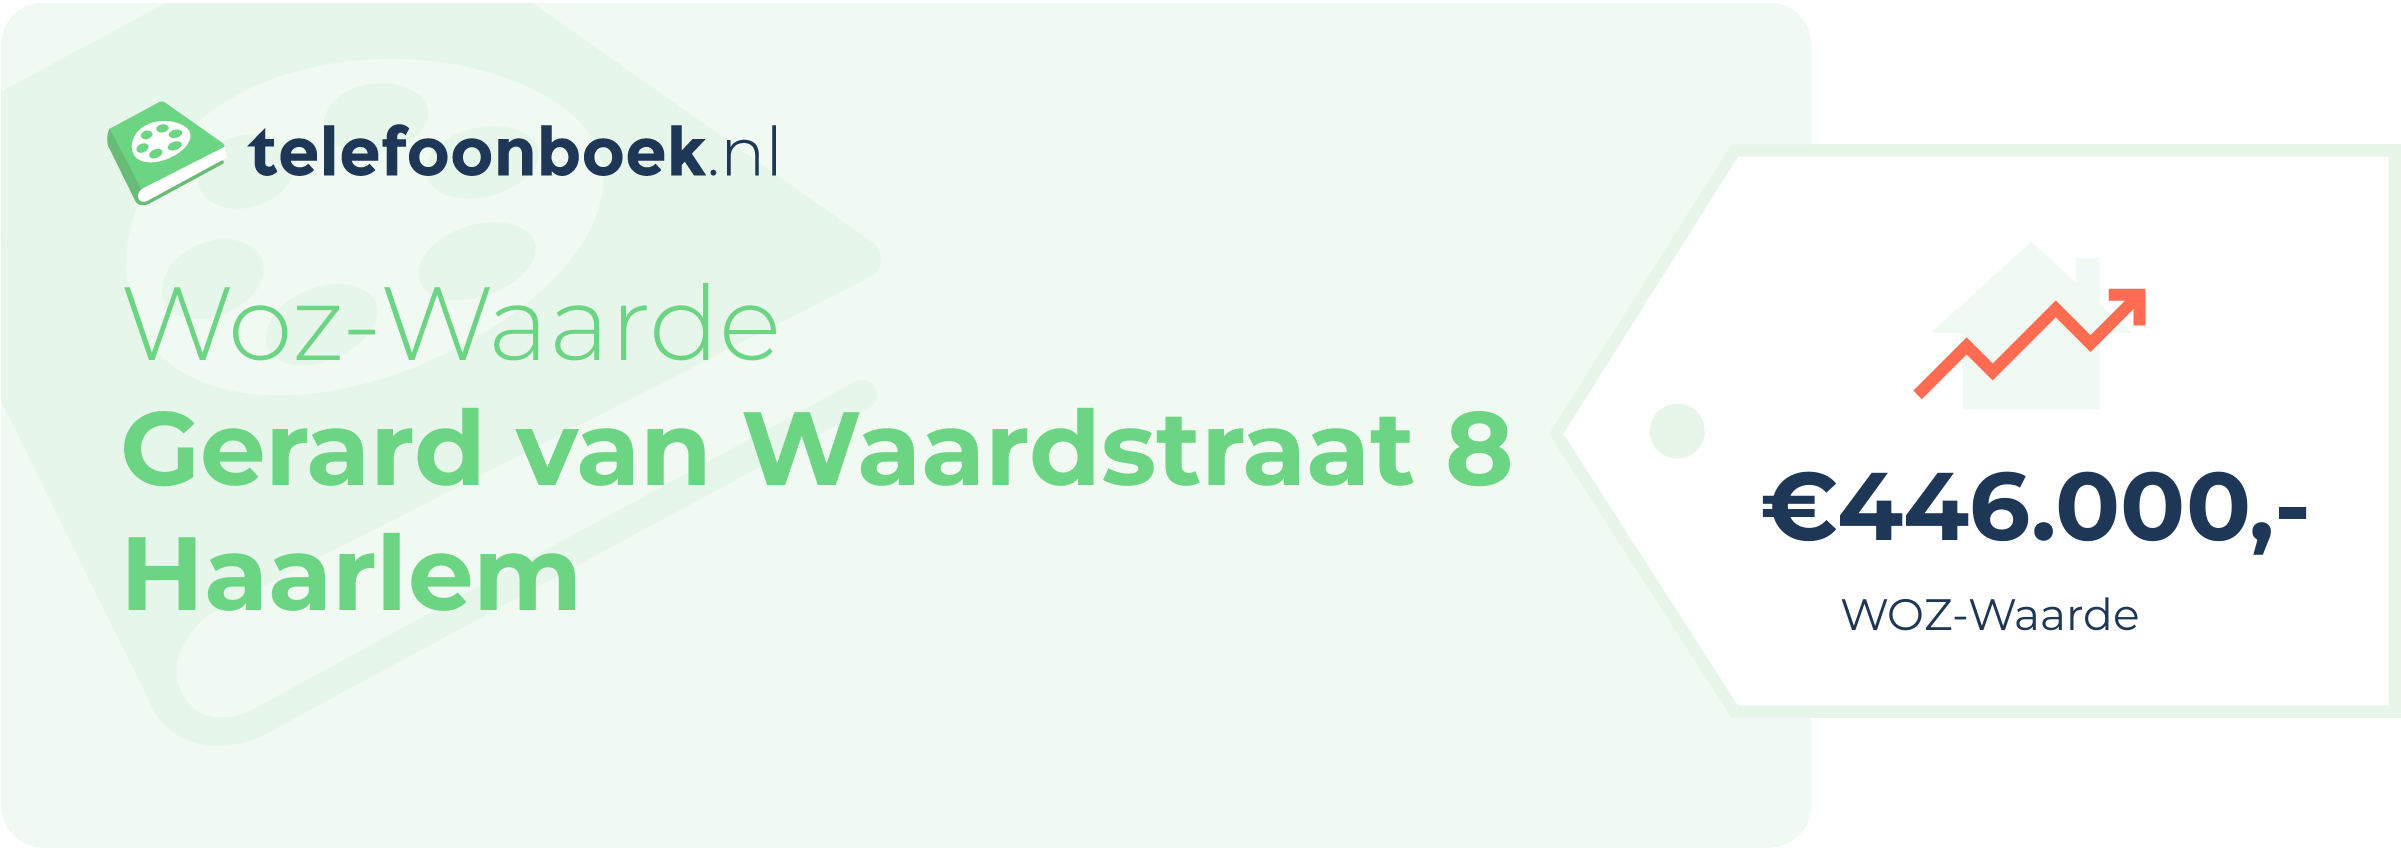 WOZ-waarde Gerard Van Waardstraat 8 Haarlem